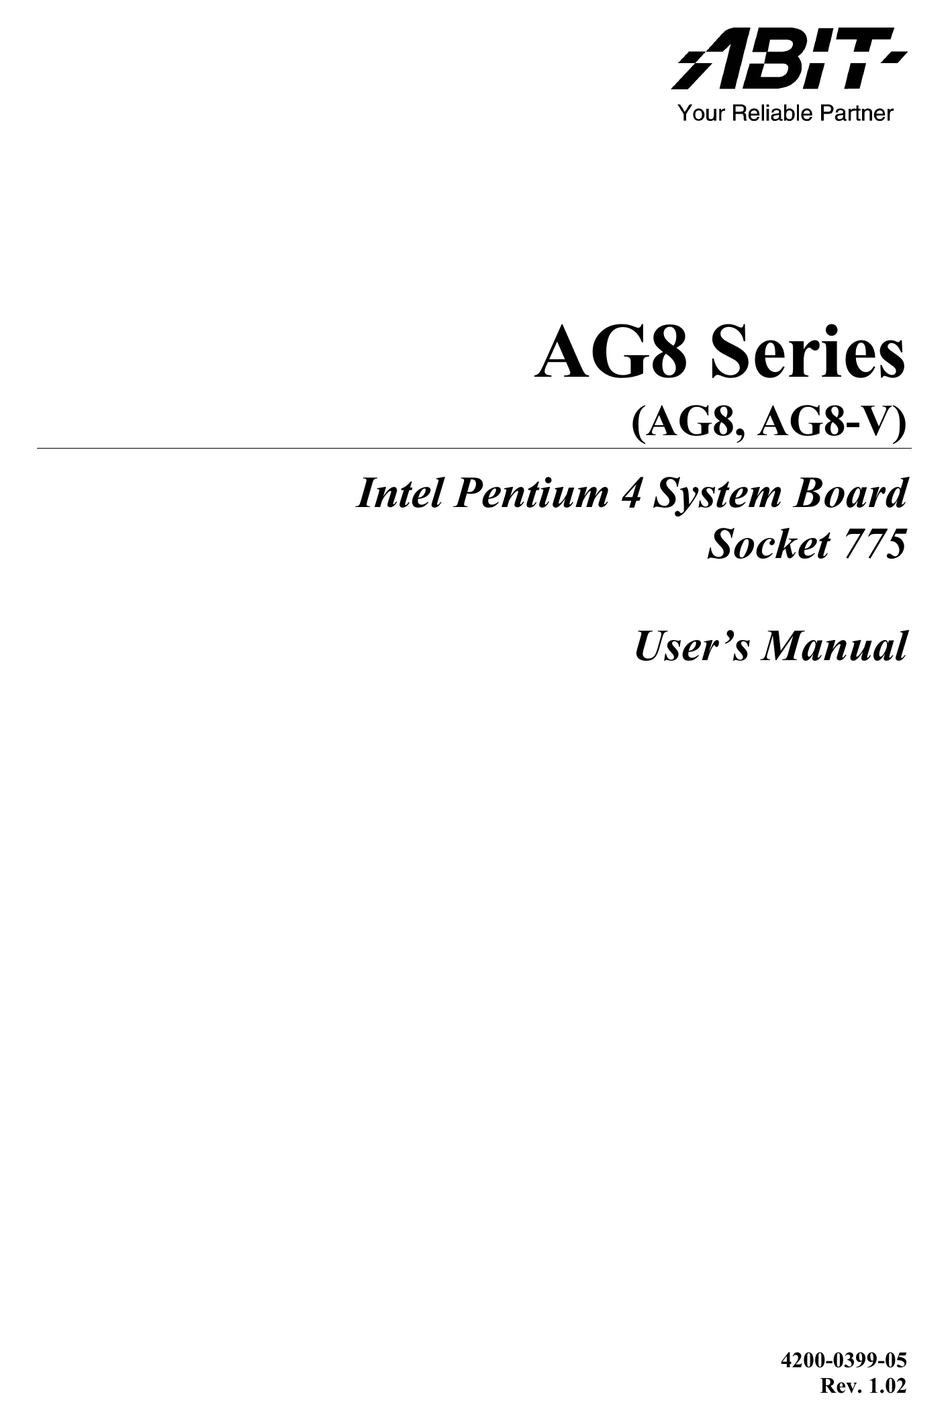 ABIT AG8 USER MANUAL Pdf Download | ManualsLib